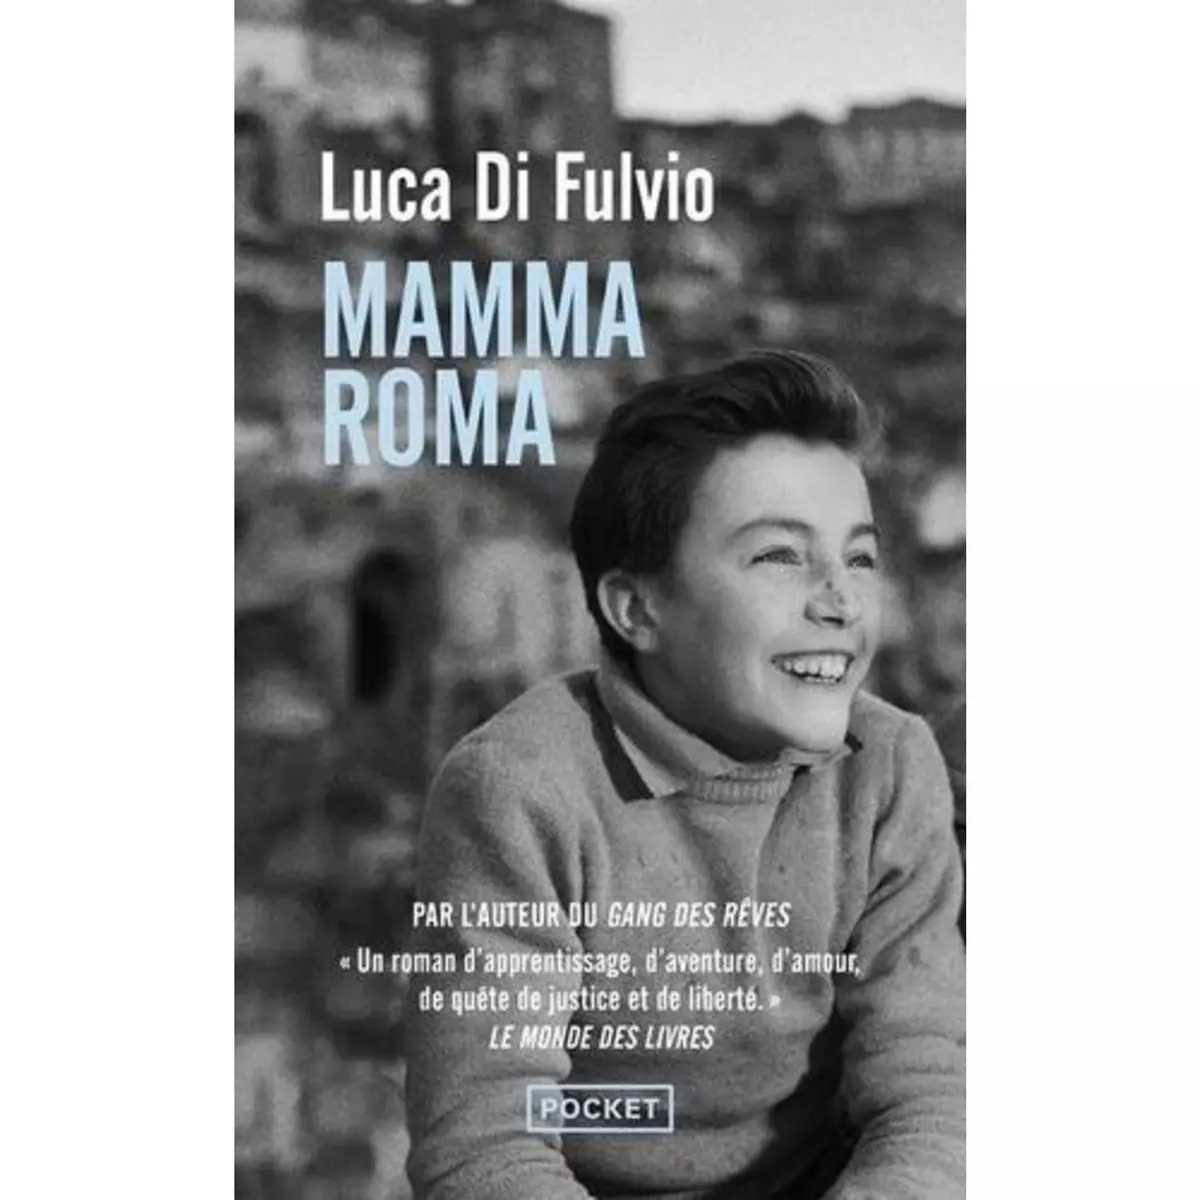  MAMMA ROMA, Di Fulvio Luca